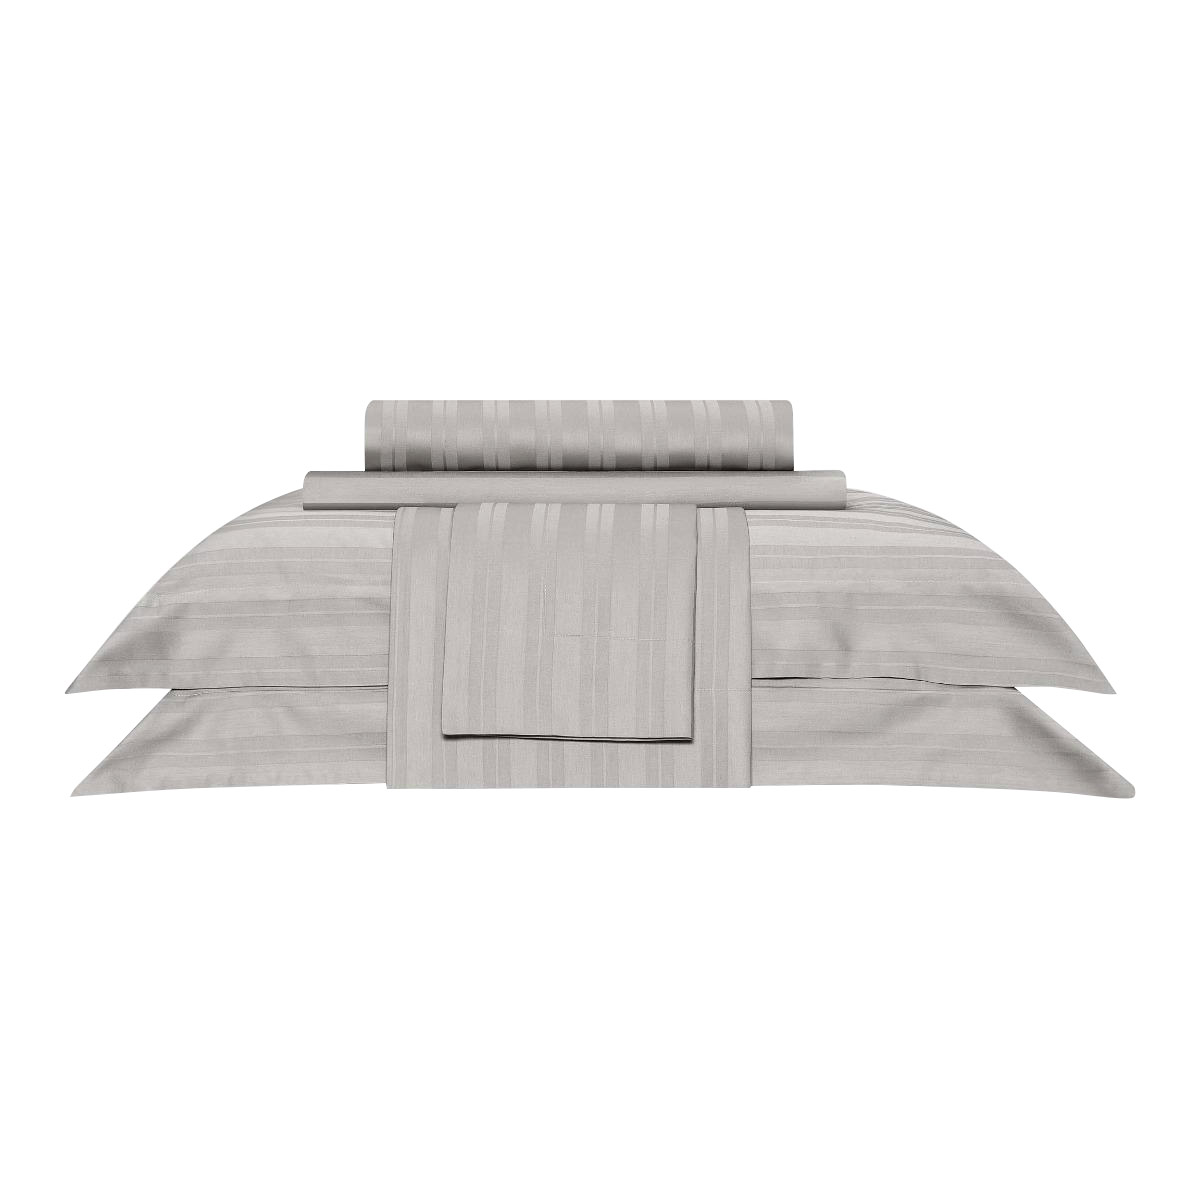 Комплект постельного белья Togas Барнетт Двуспальный кинг сайз светло-серый, размер Двуспальный евро - фото 8